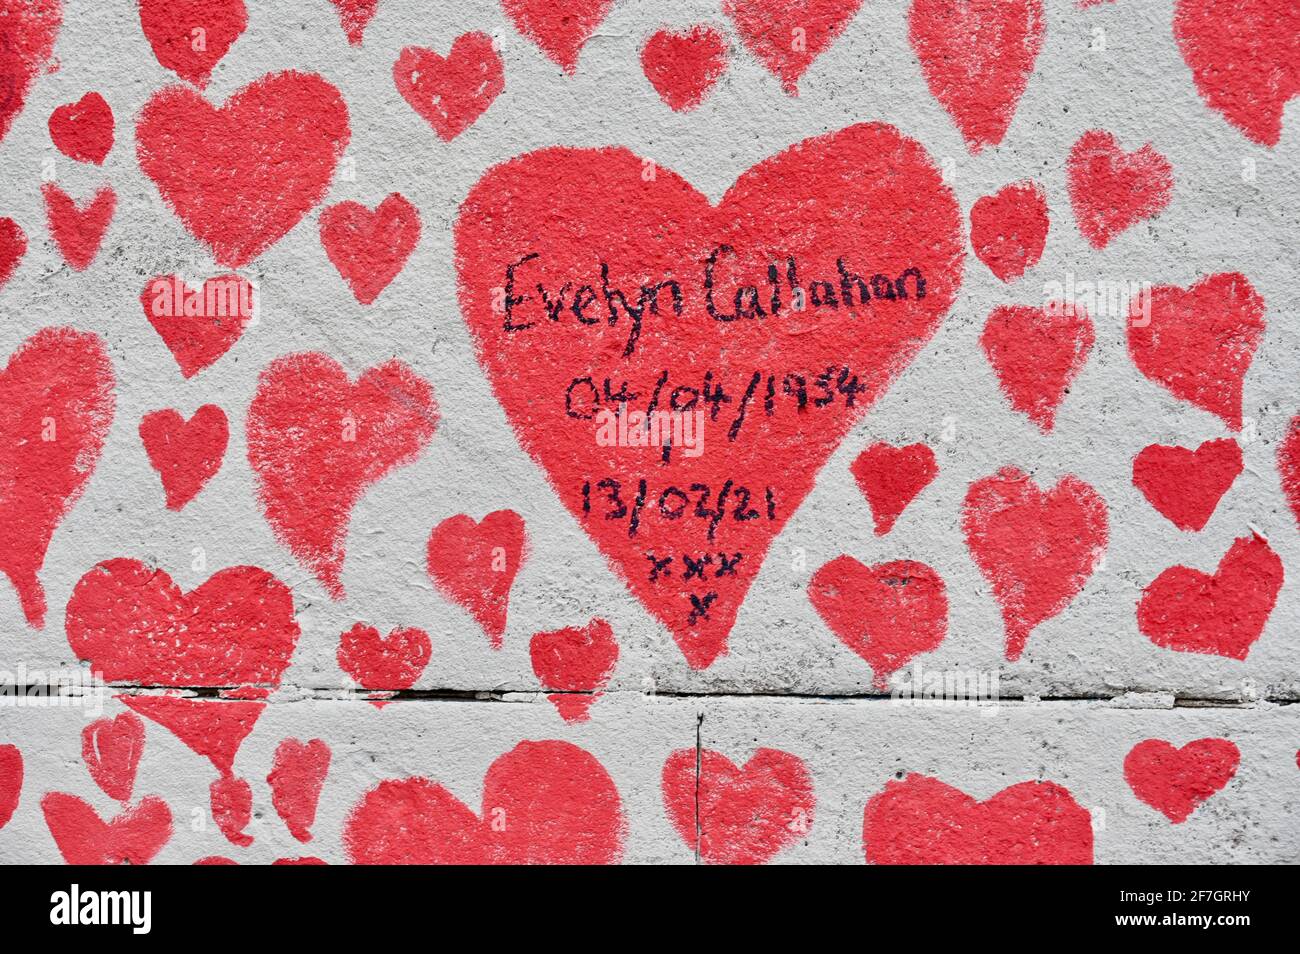 National Covid Memorial Wall, alrededor de 130.000 corazones han sido pintados en una sección de un kilómetro de largo de la pared frente a las Casas del Parlamento como un monumento a los que han muerto de Coronavirus. Hospital St Thomas, Westminster, Londres. REINO UNIDO Foto de stock